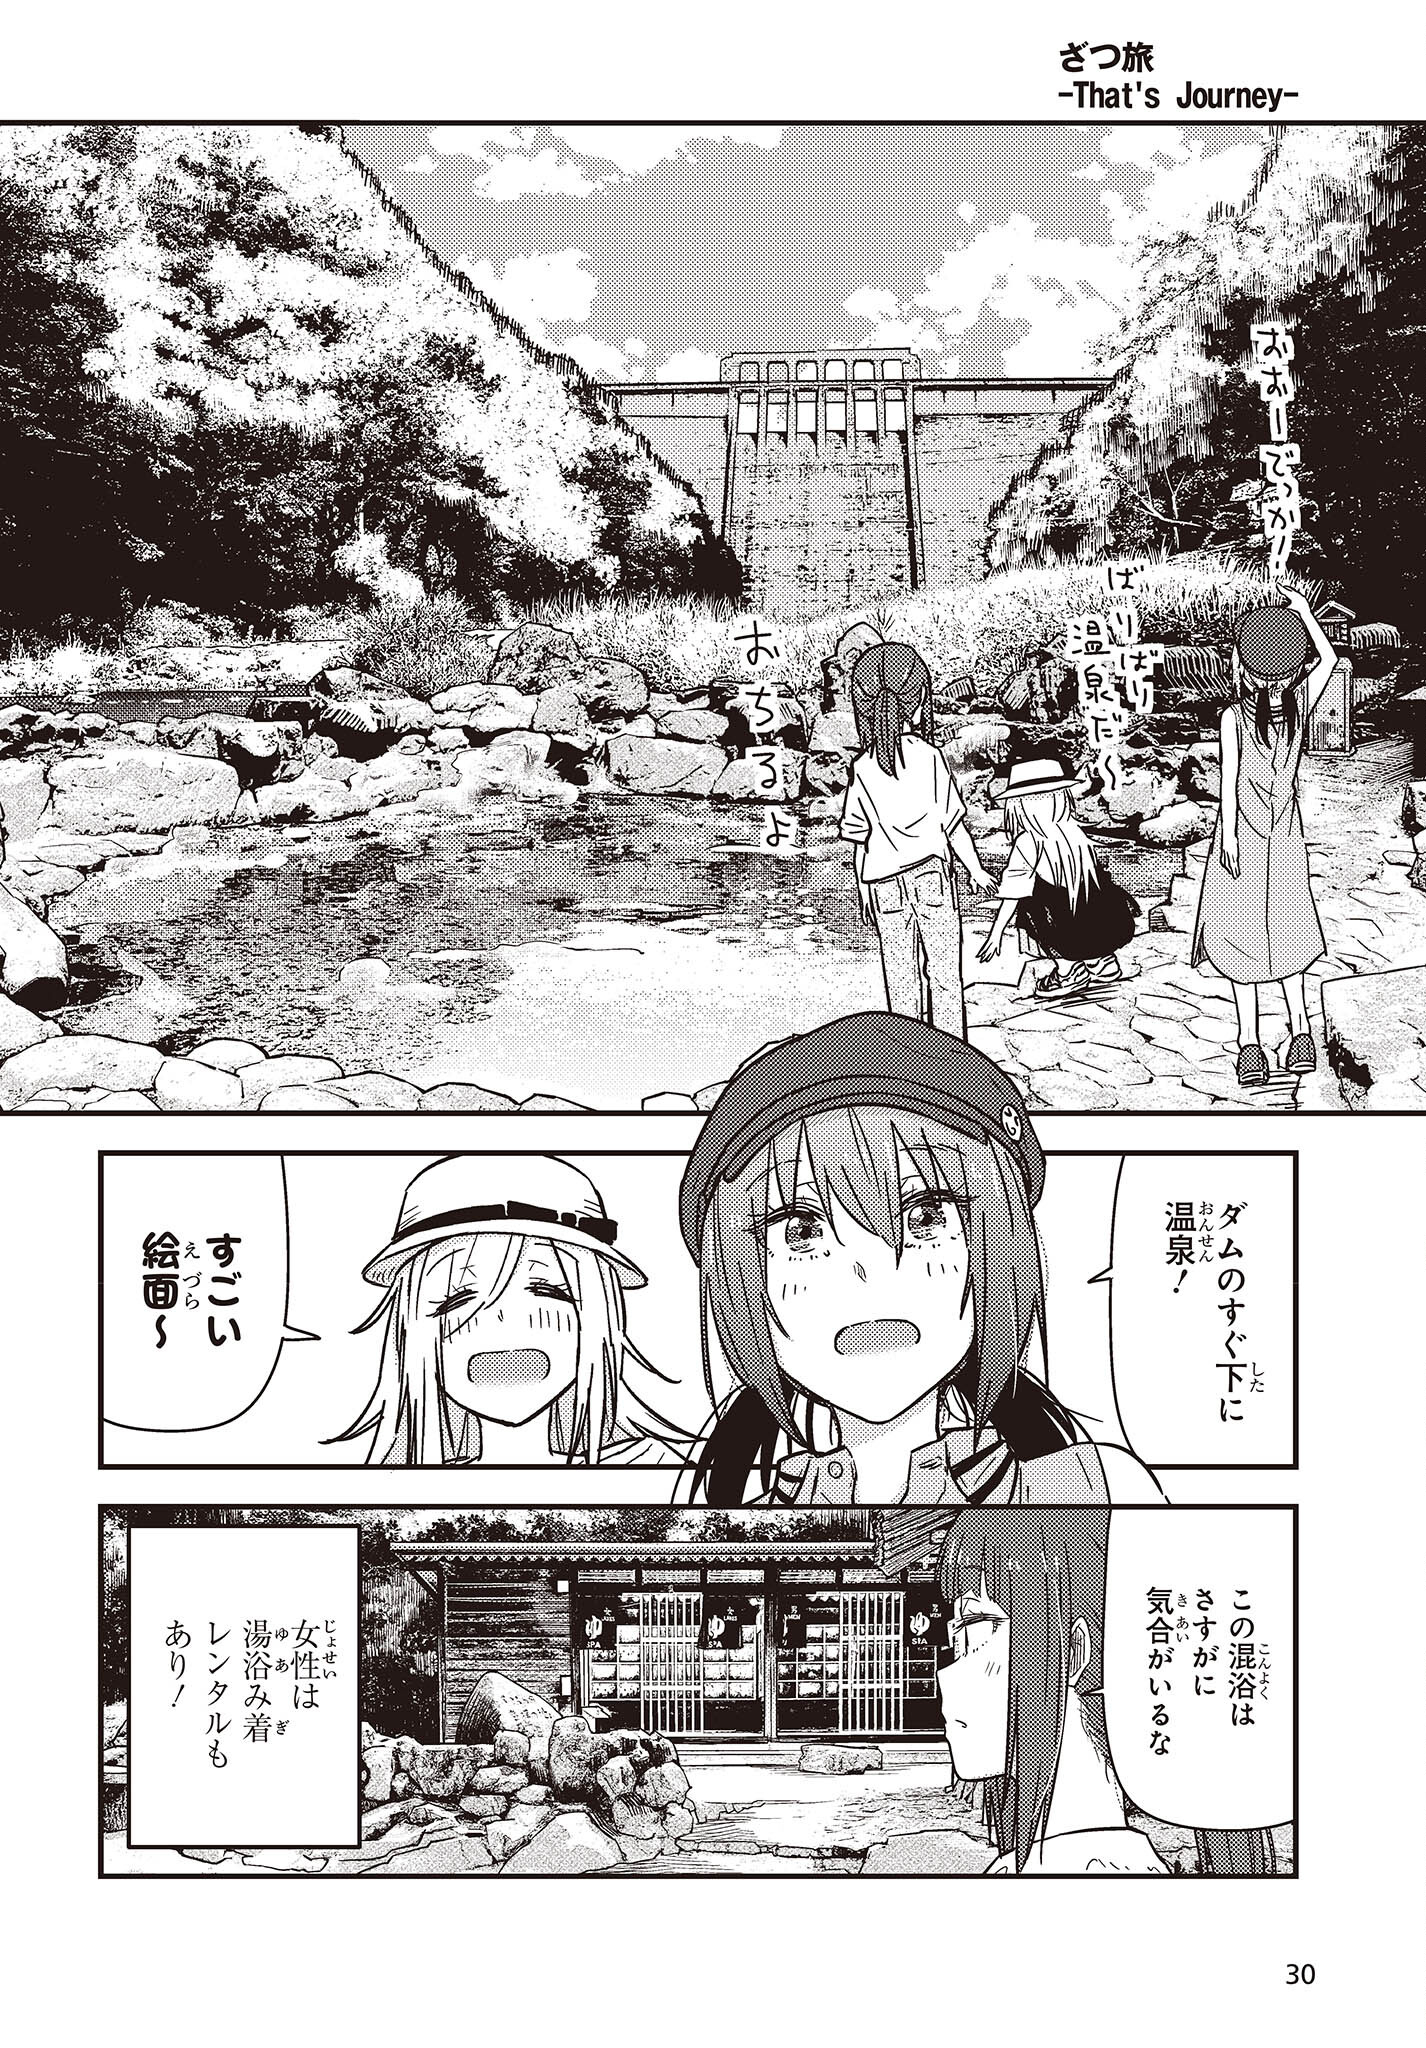 ざつ旅-That’s Journey- 第33話 - Page 24